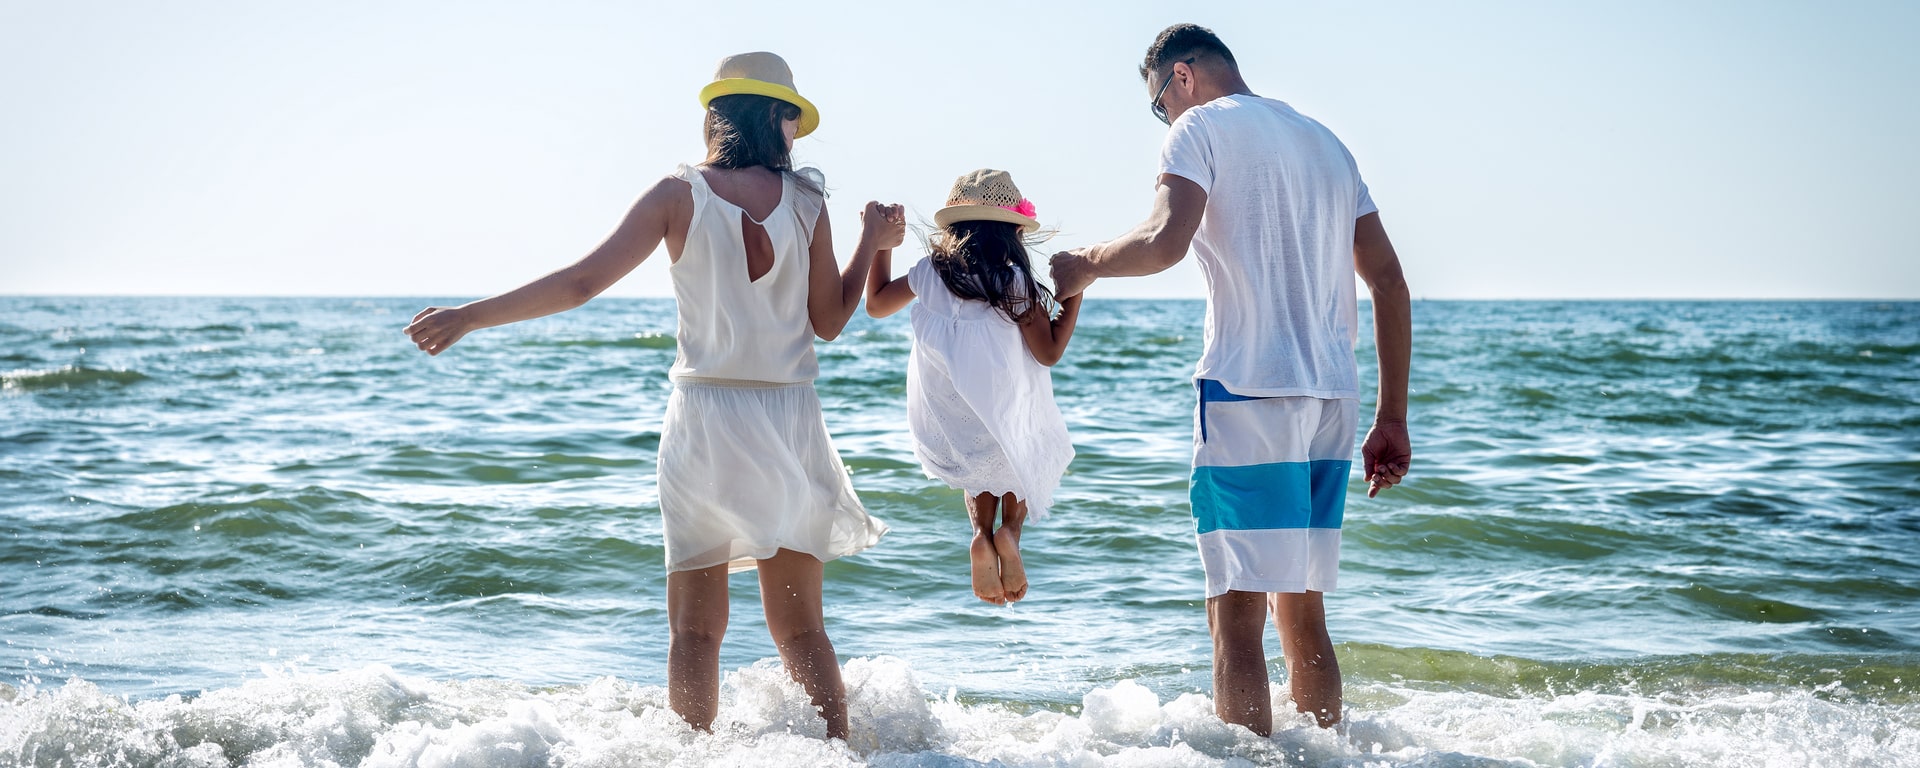 Offerta Happy Family 7 giorni paghi 6 + spiaggia compresa + bambino gratis